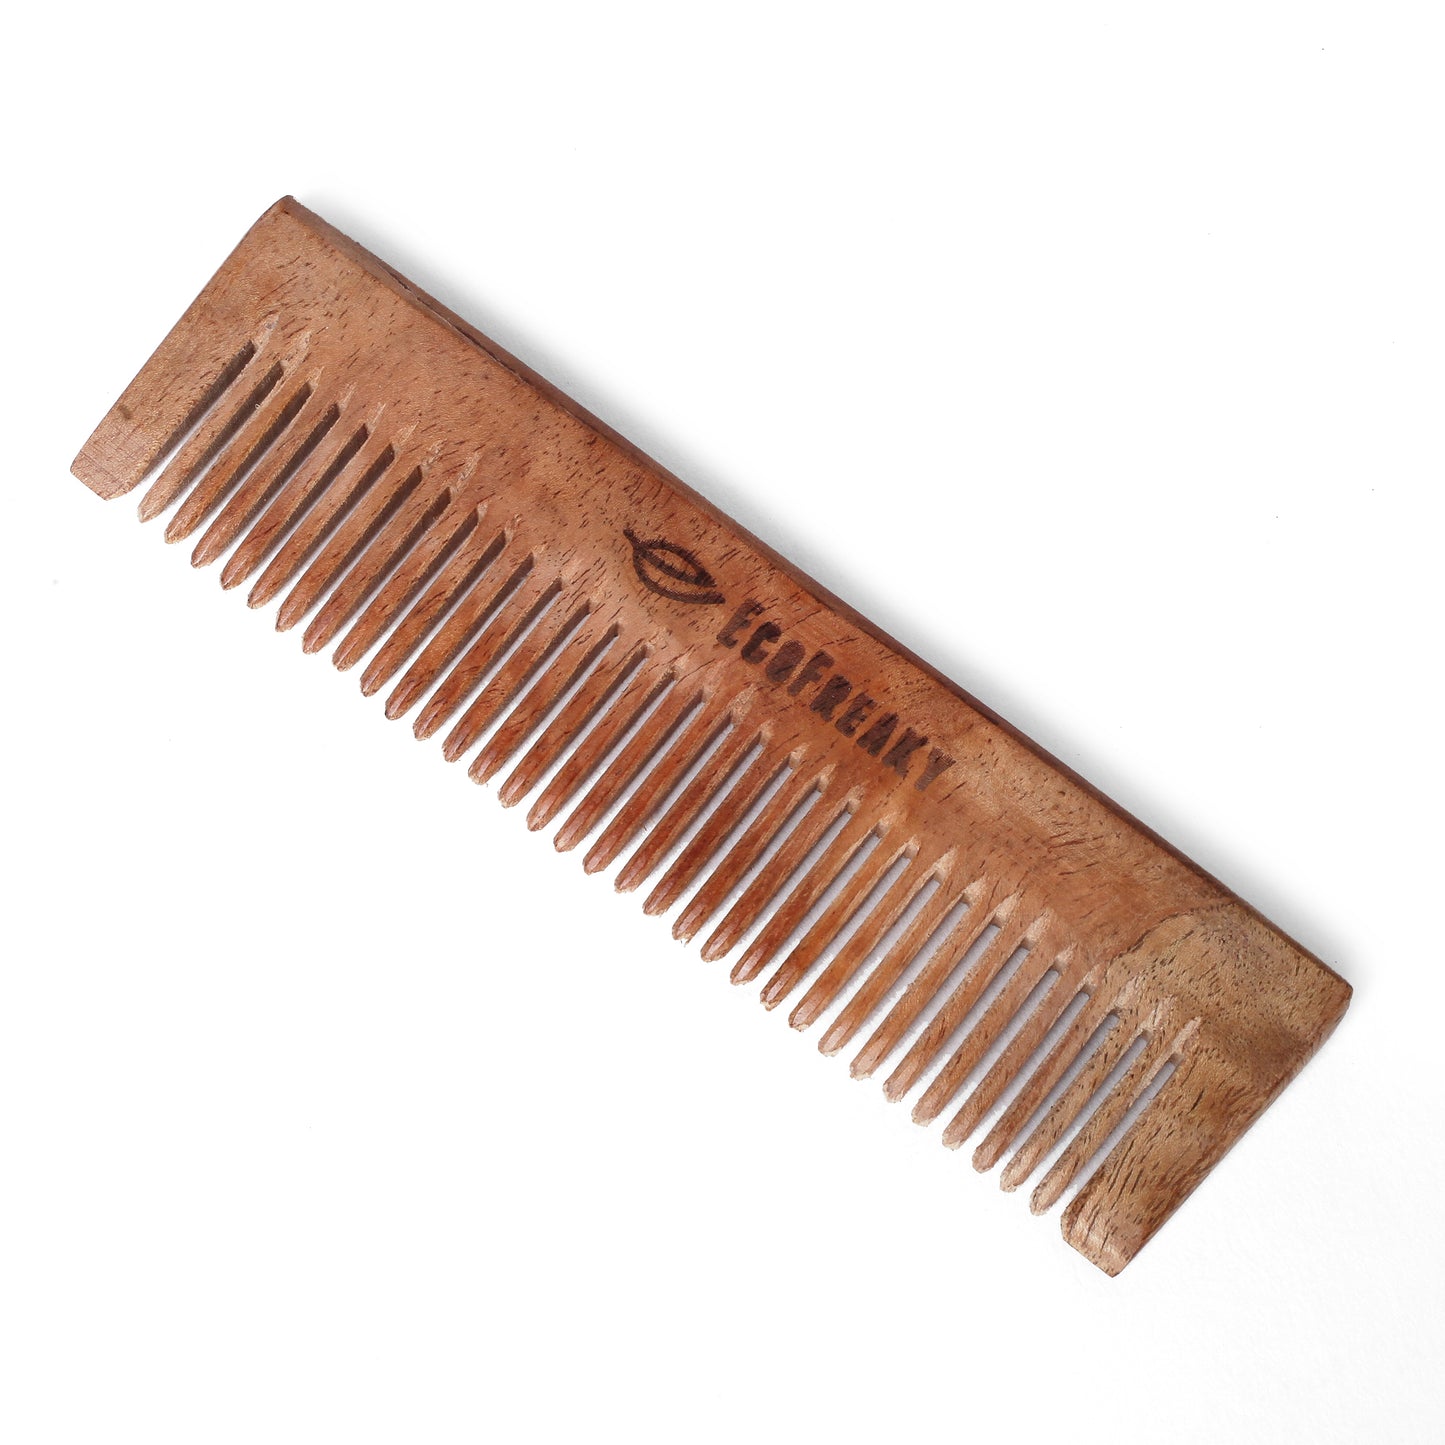 Pure Neem Wood Pocket Comb | Antibacterial Wooden Comb